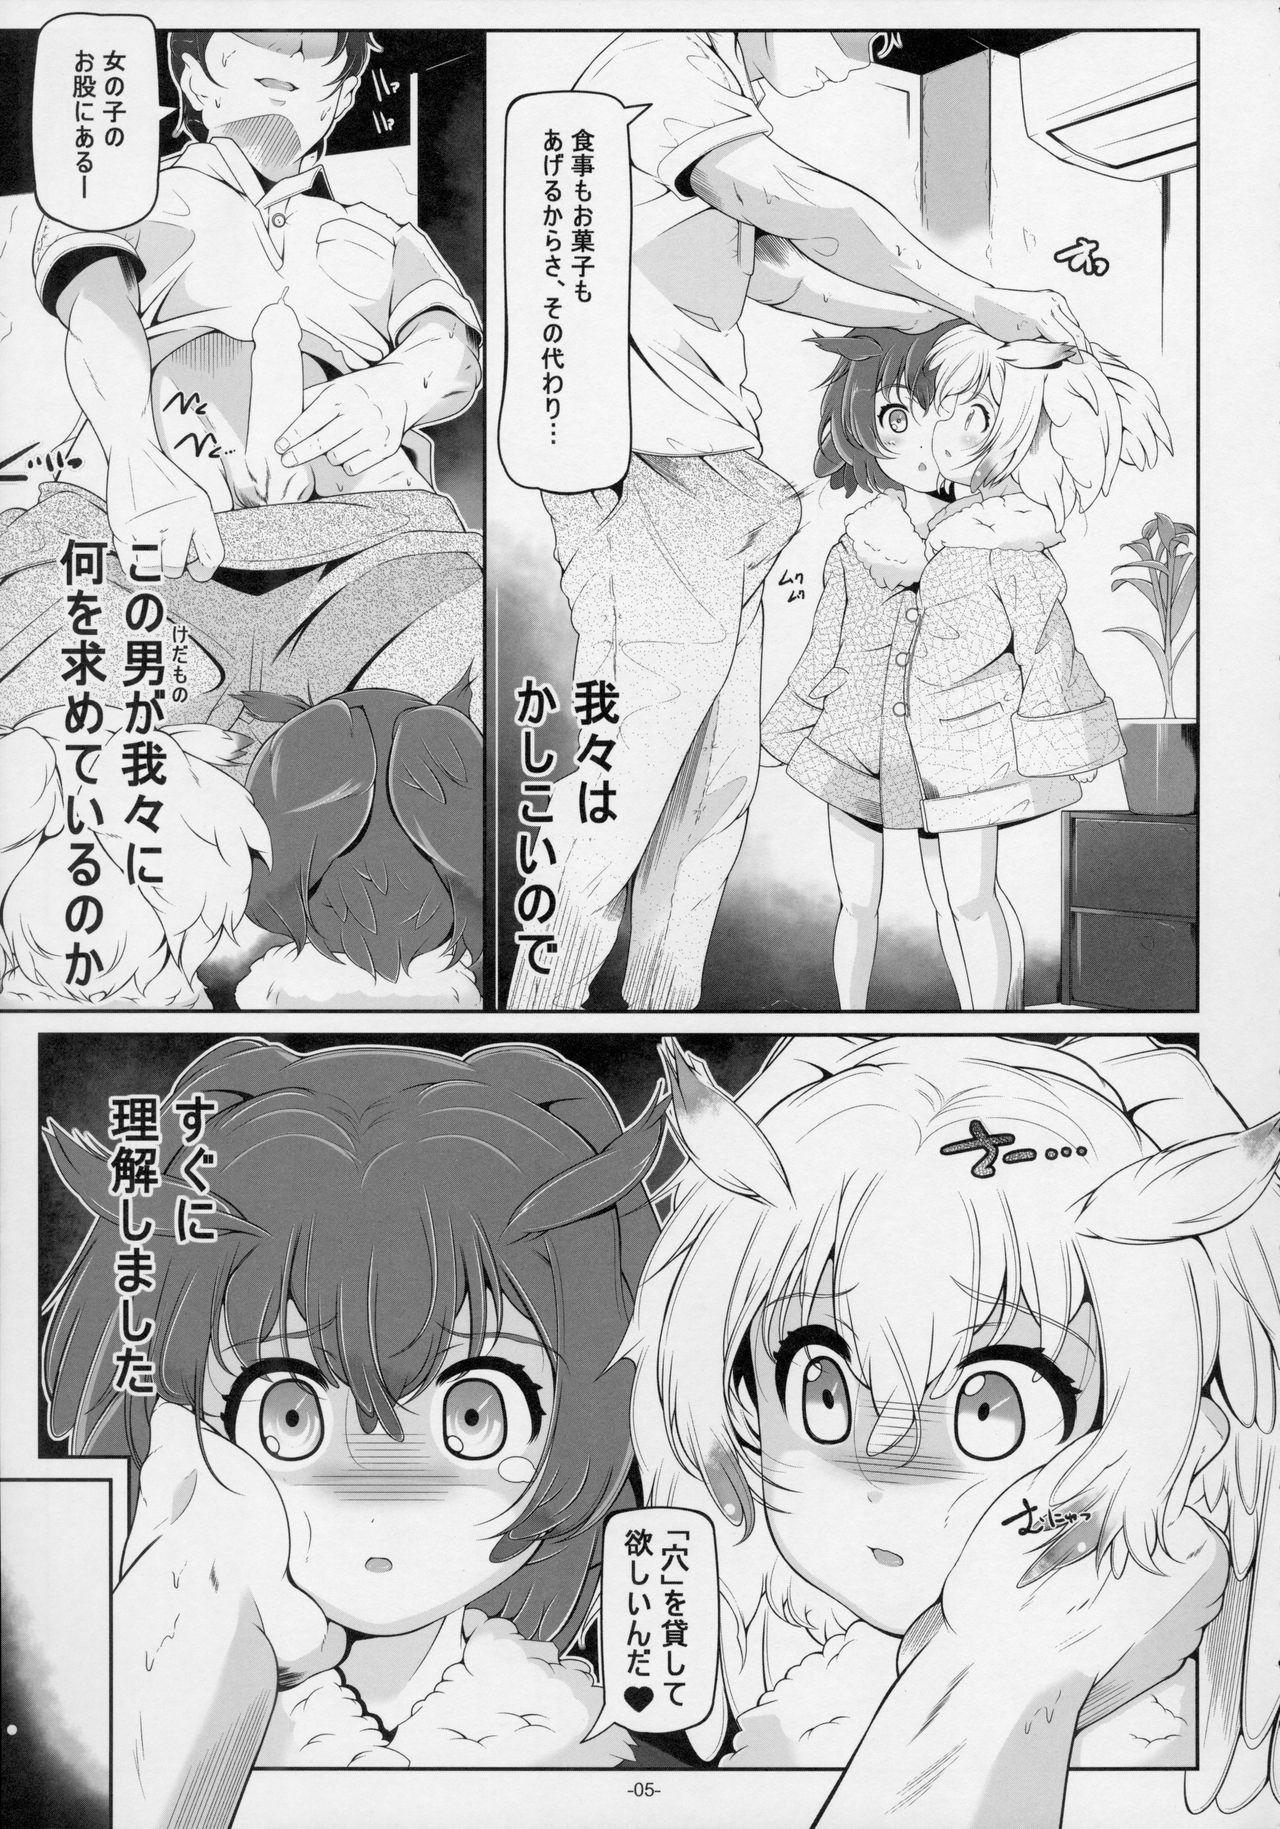 Gostosa Hakase Joshu no Kaikata - Kemono friends Back to the future Sensual - Page 7